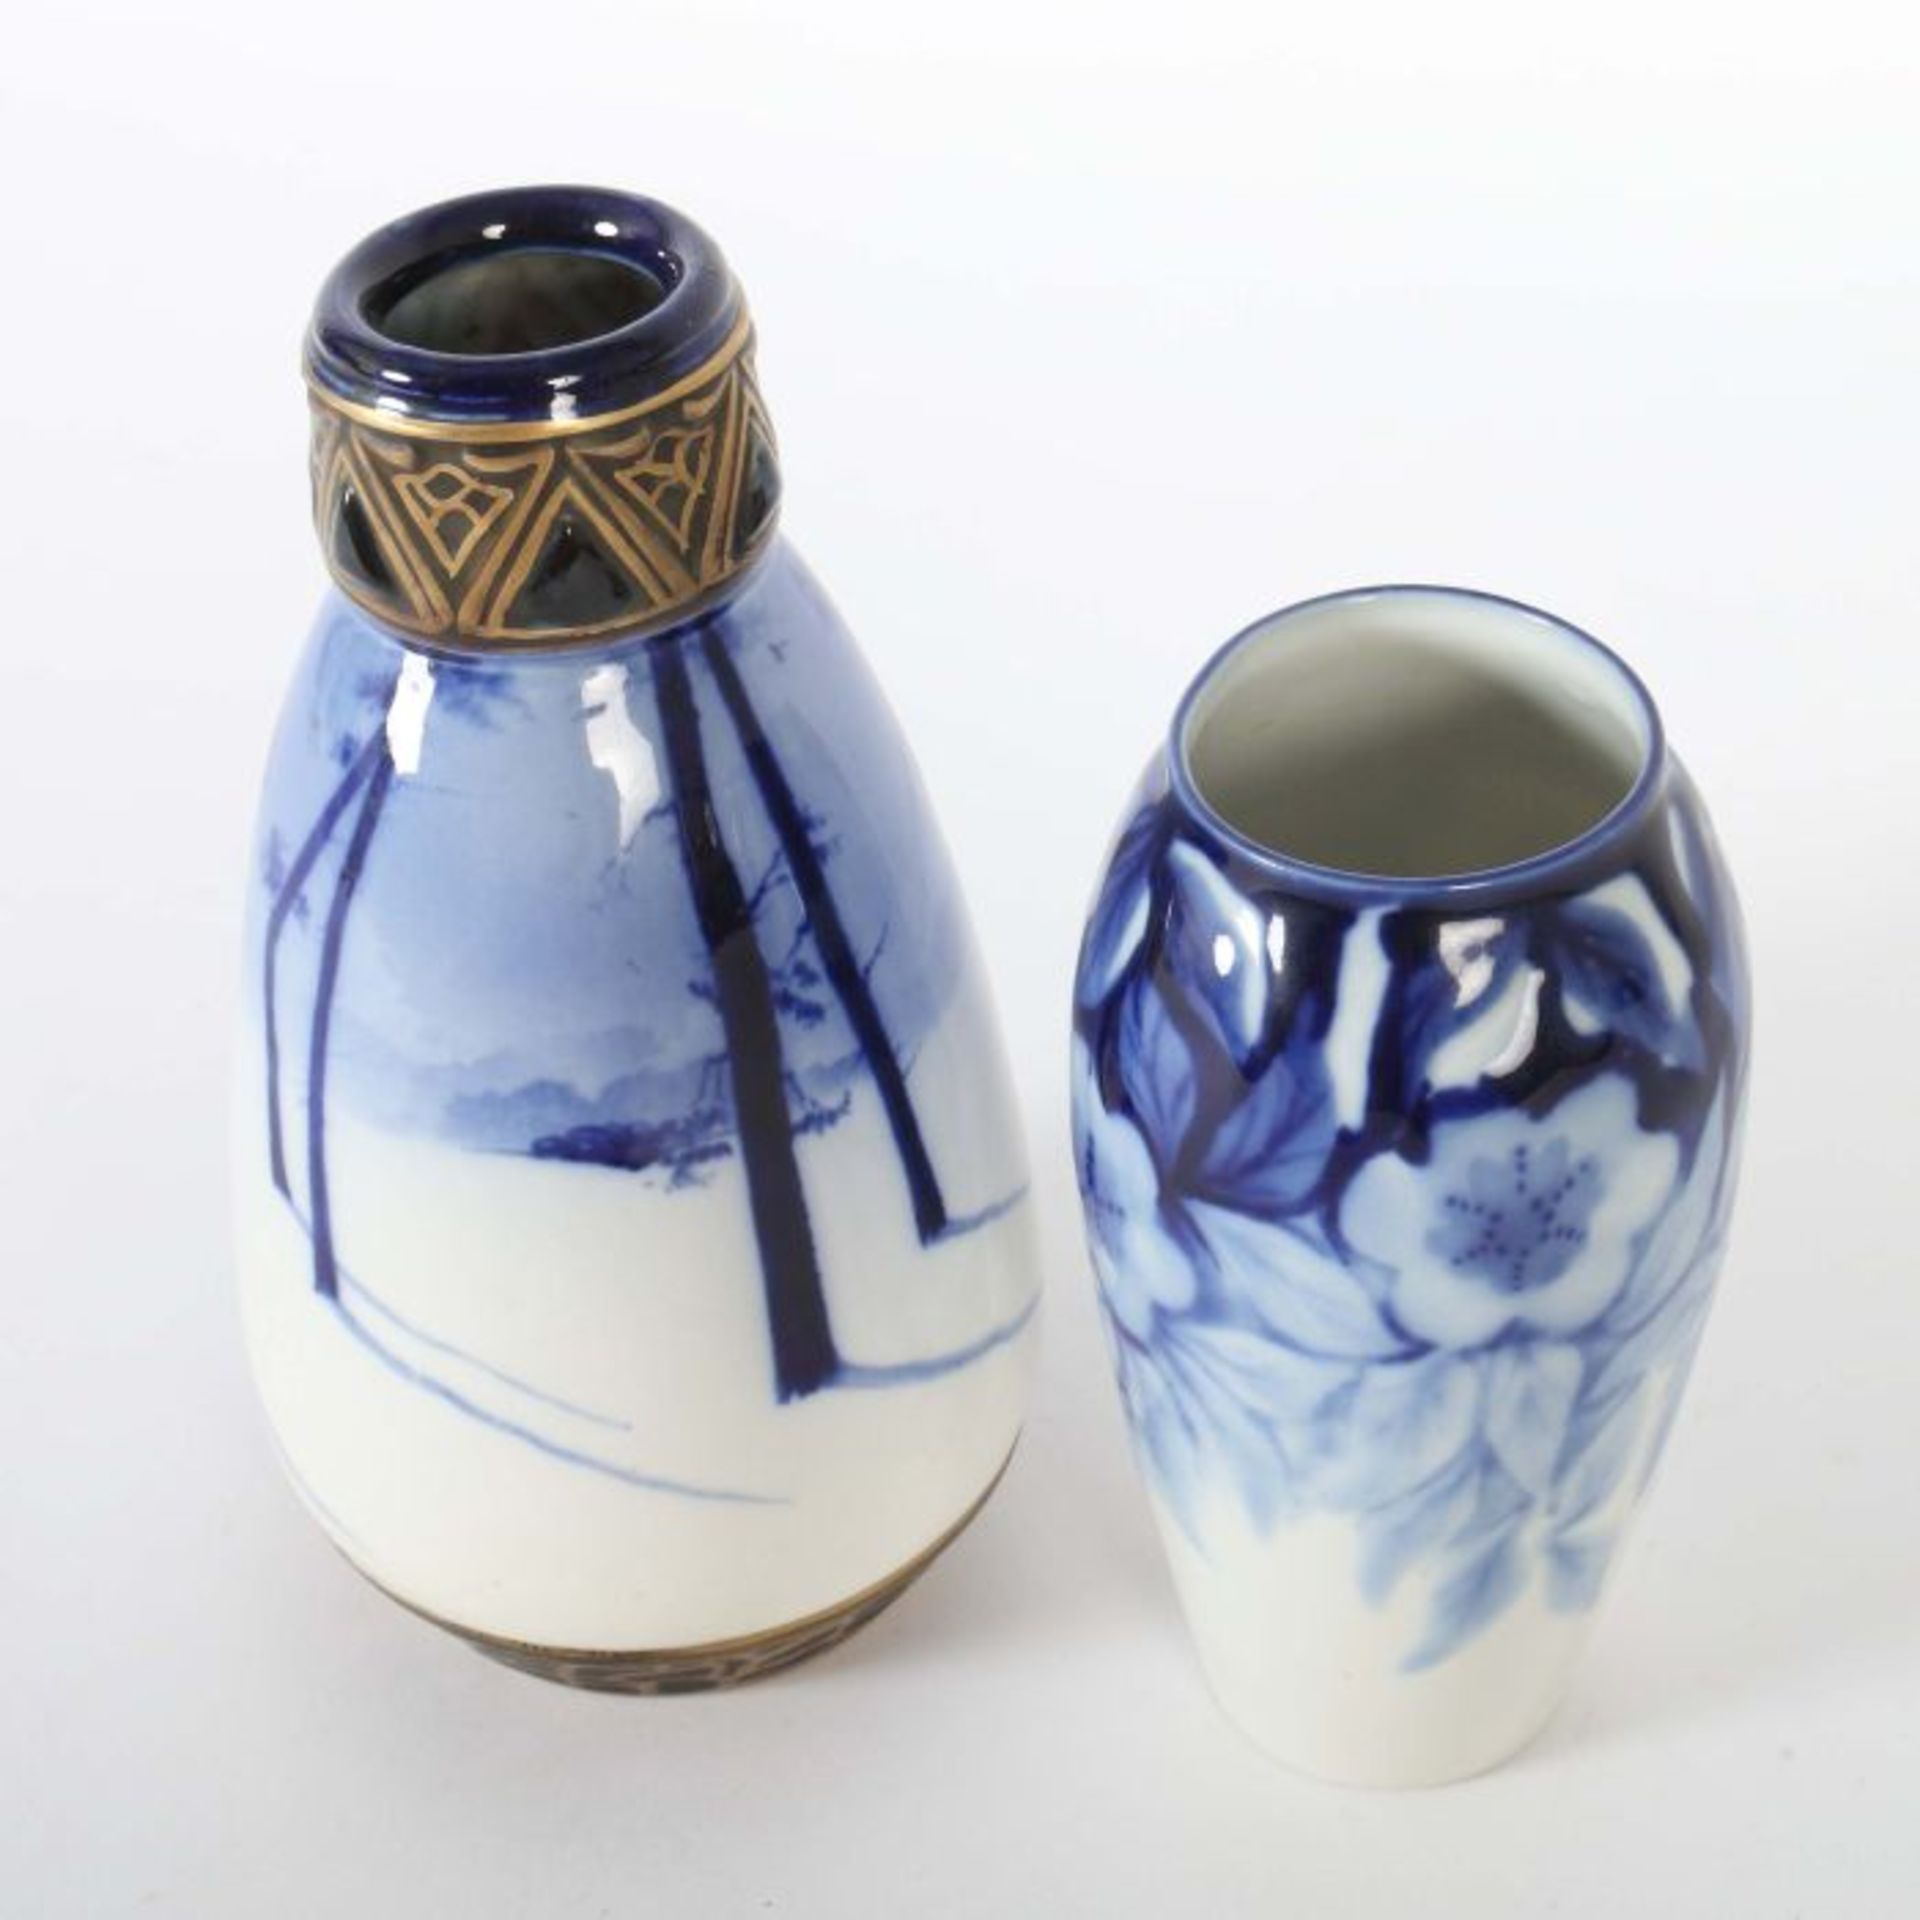 Zwei Vasen Limoges/Wien, Porzellanfabrik Camille Tharaud/Ernst Wahliss, nach 1920/um 1900, - Bild 2 aus 4